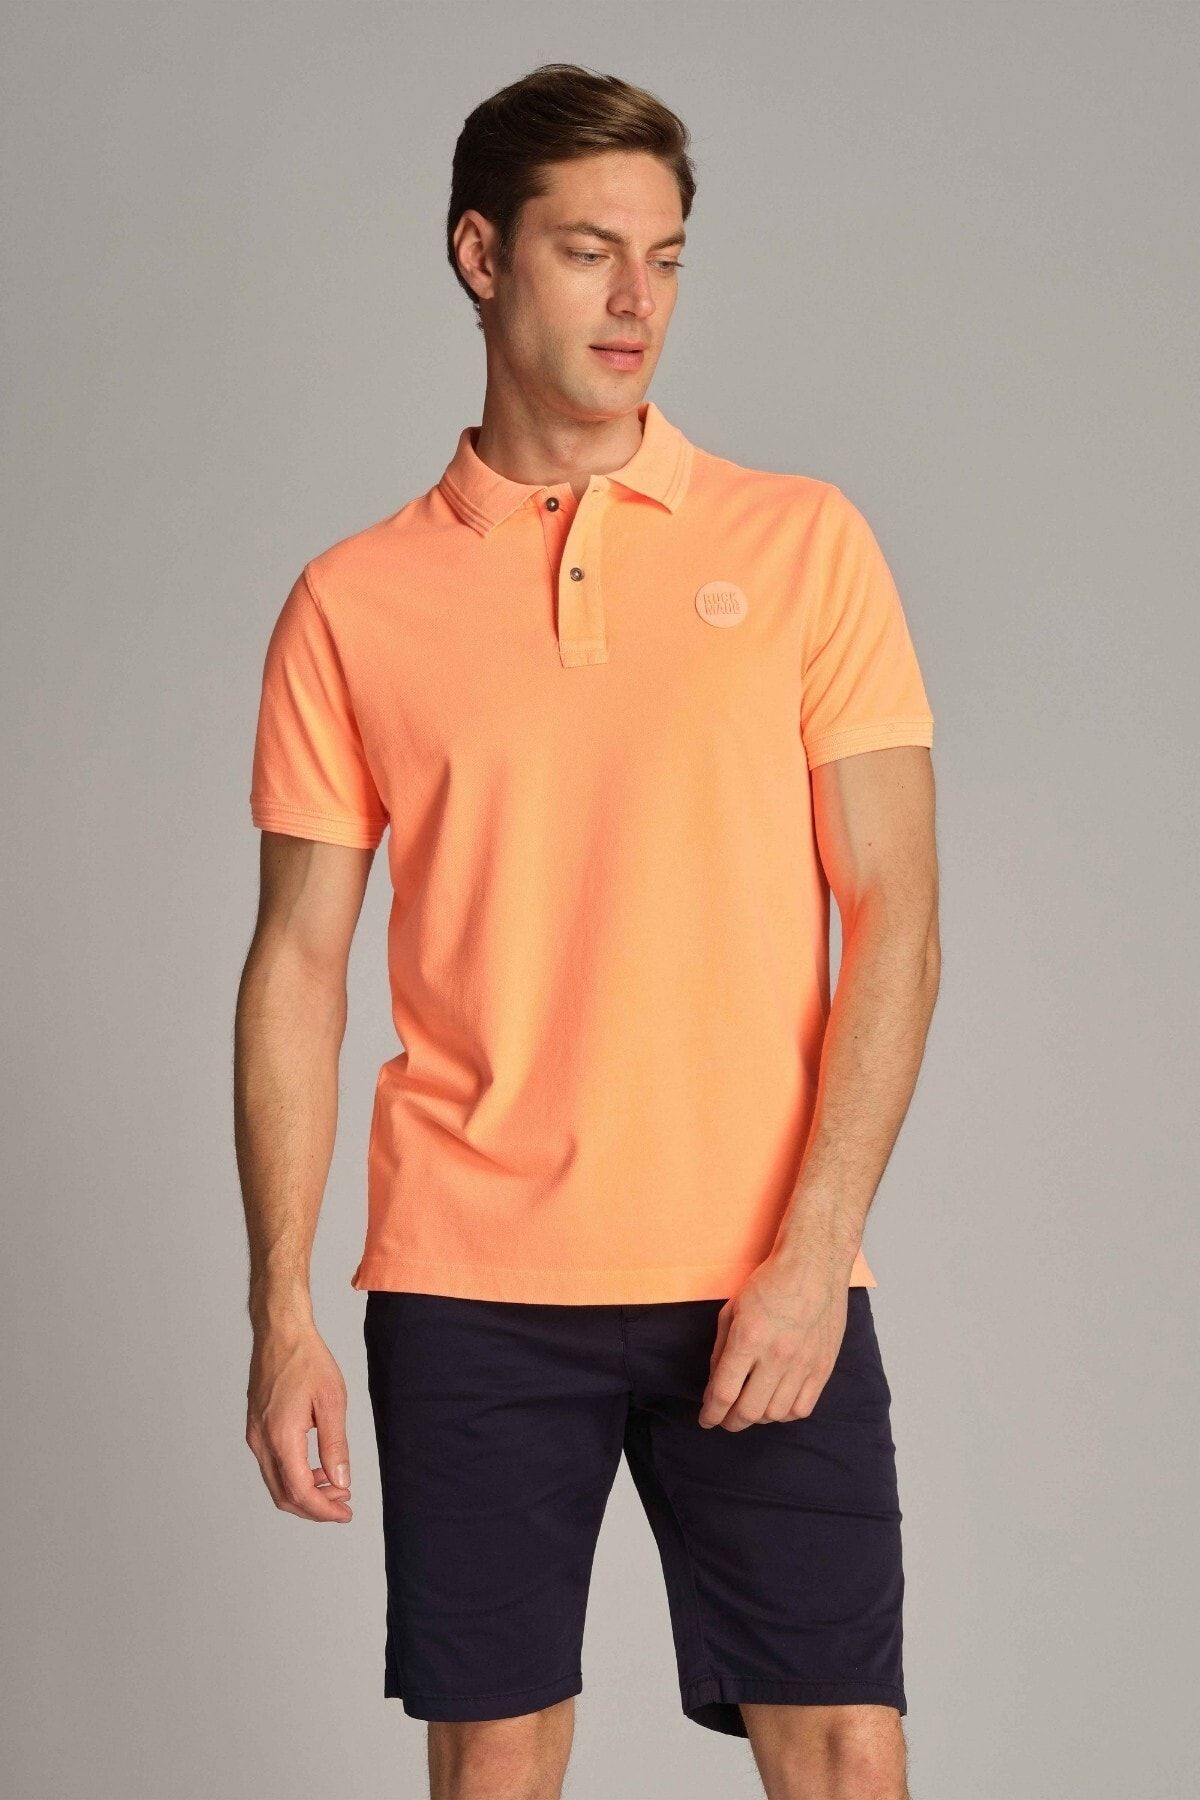 Ruck & Maul Erkek Polo Tişört 23313 1423 - Neon Orange